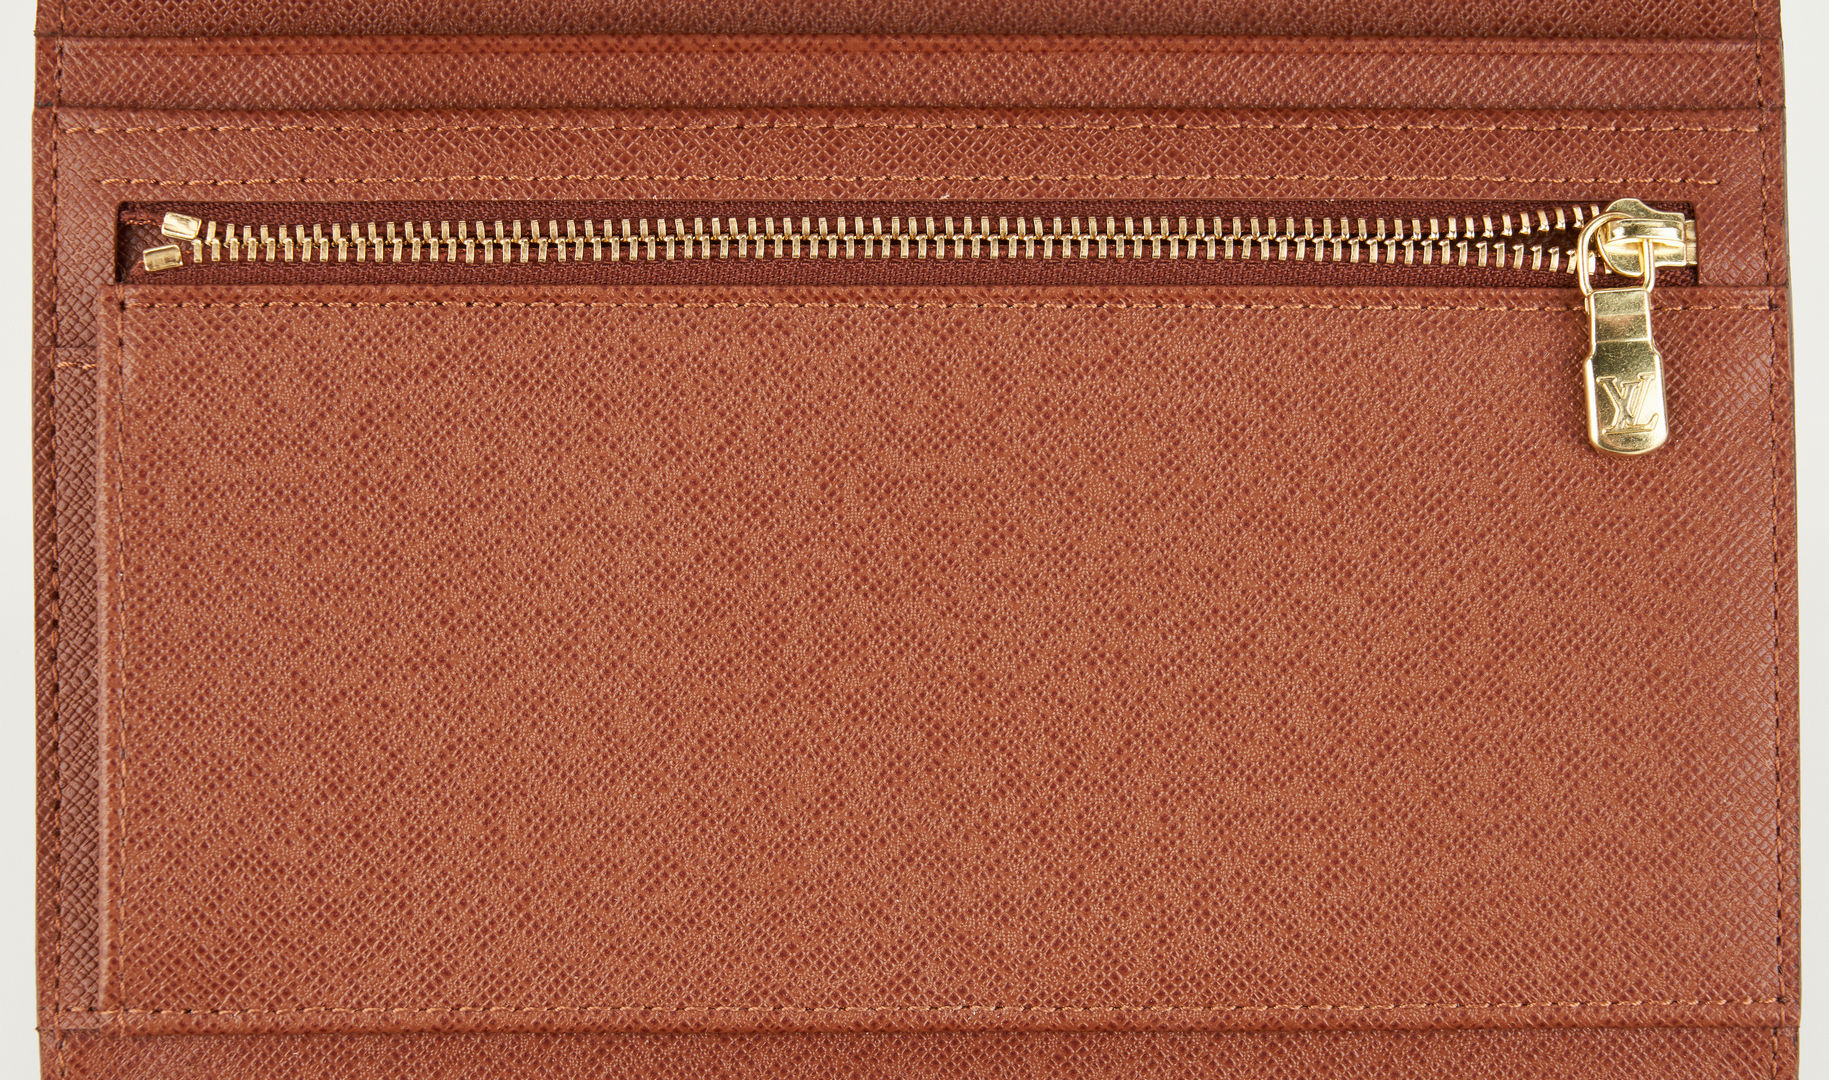 Lot 864: Louis Vuitton Wallet New w/ Box